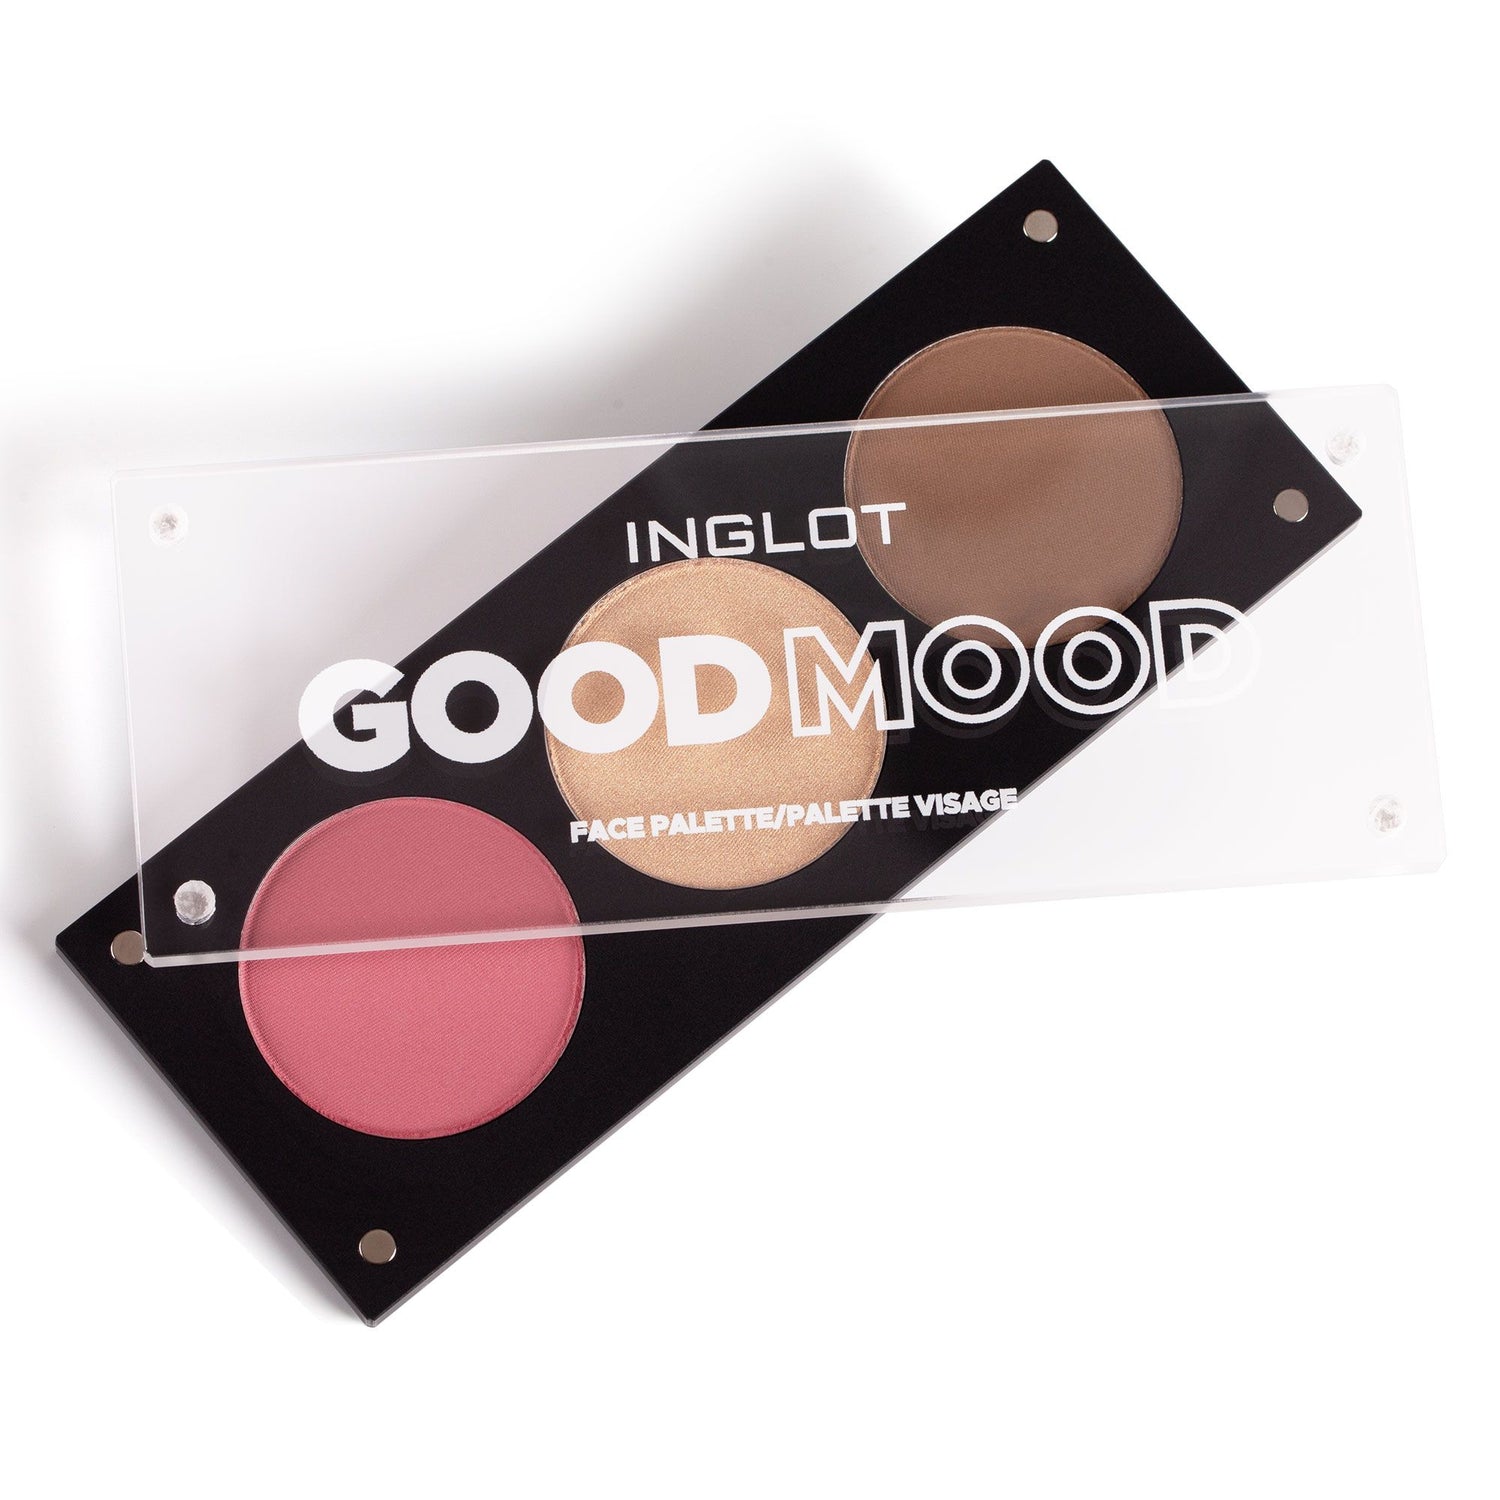 Good Mood Face Palette - make-up palette - Inglot Cosmetics